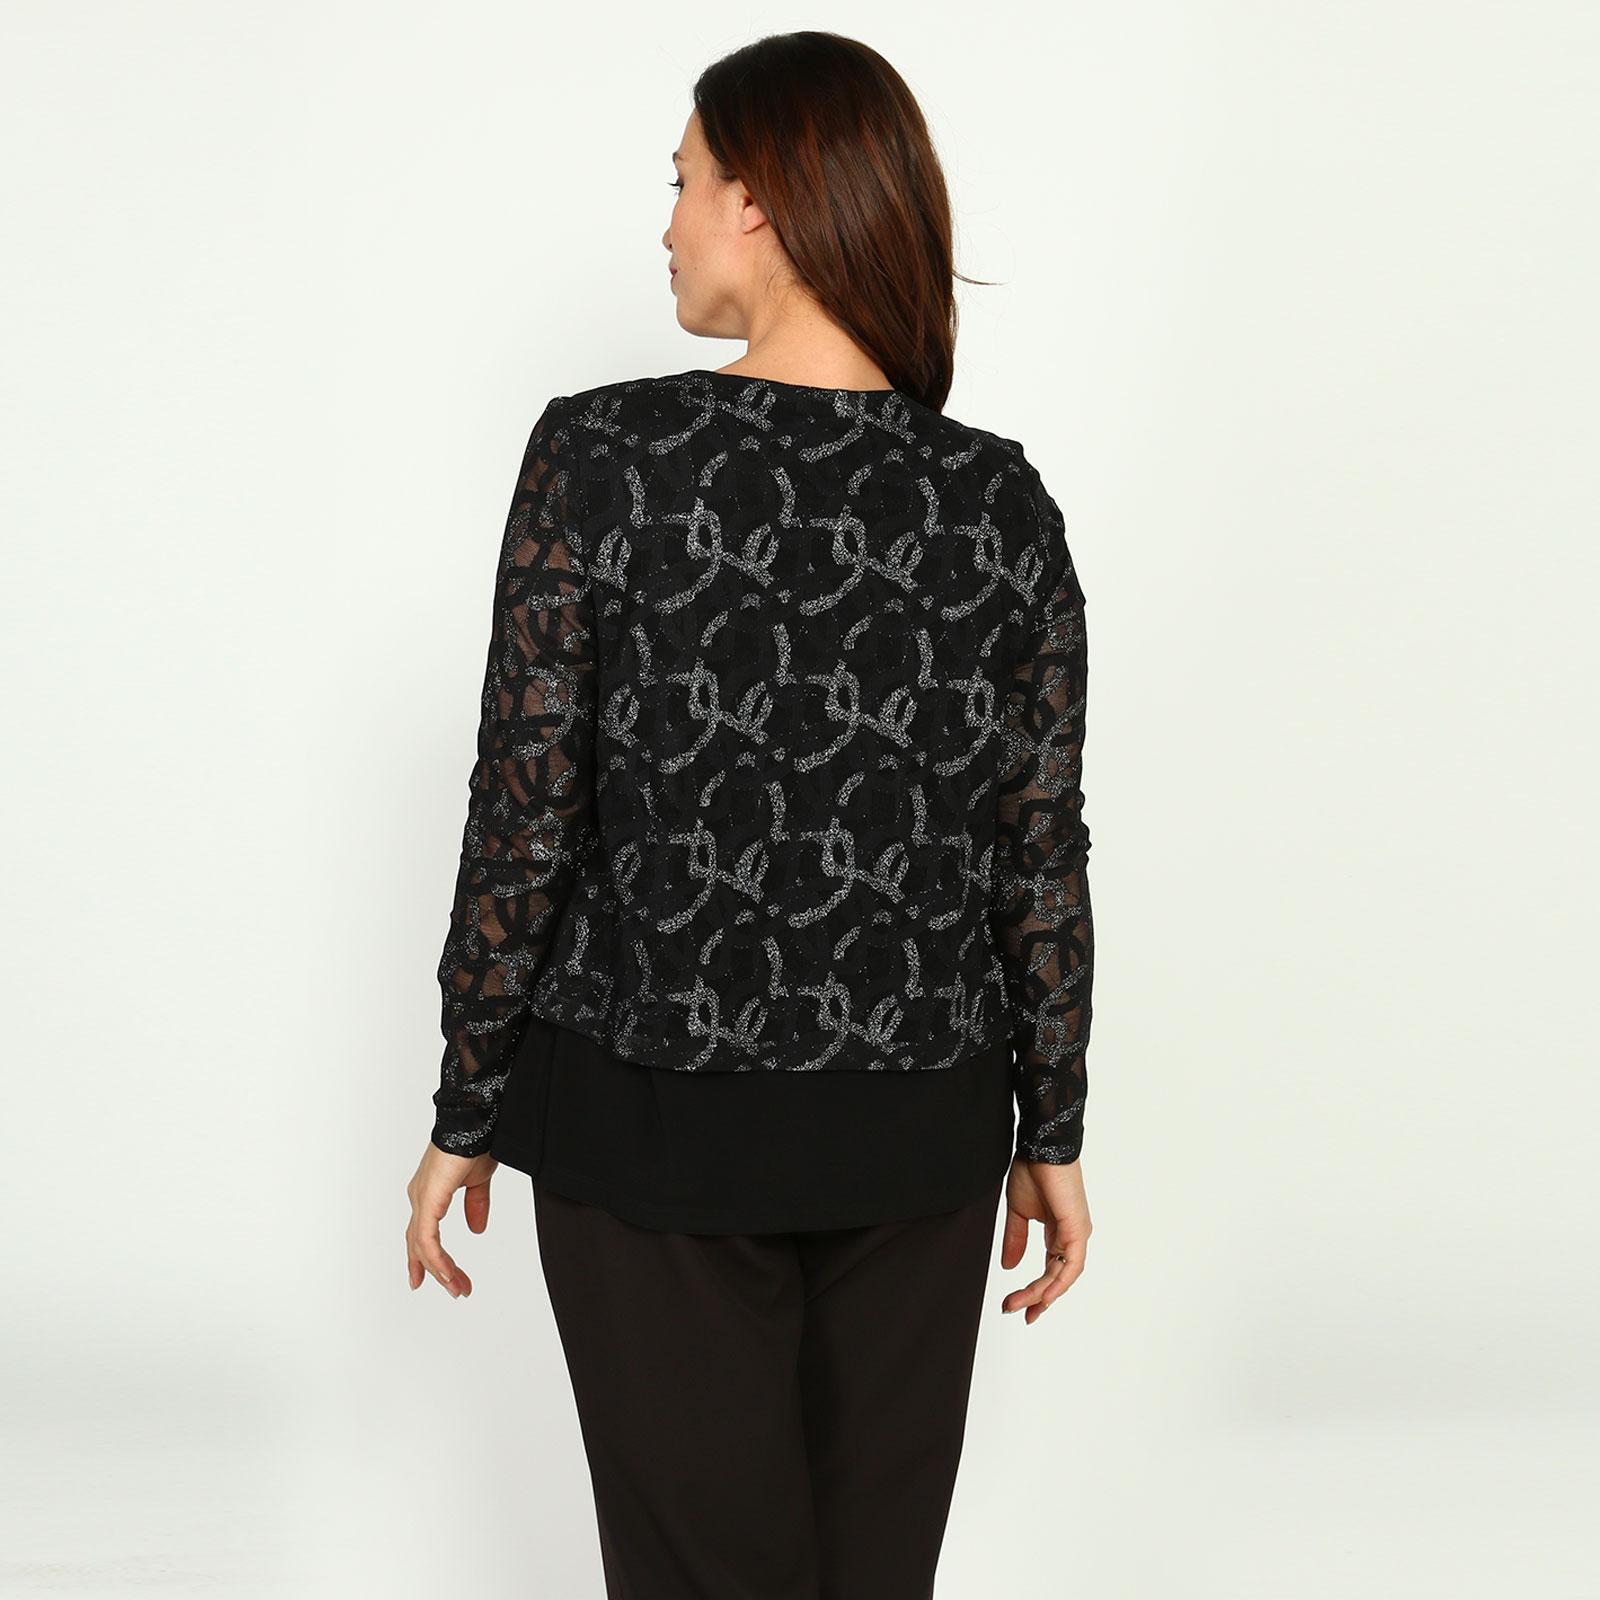 Блуза с эффектом двойки и завязками Elletto Life, размер 48, цвет черно-золотистый - фото 4